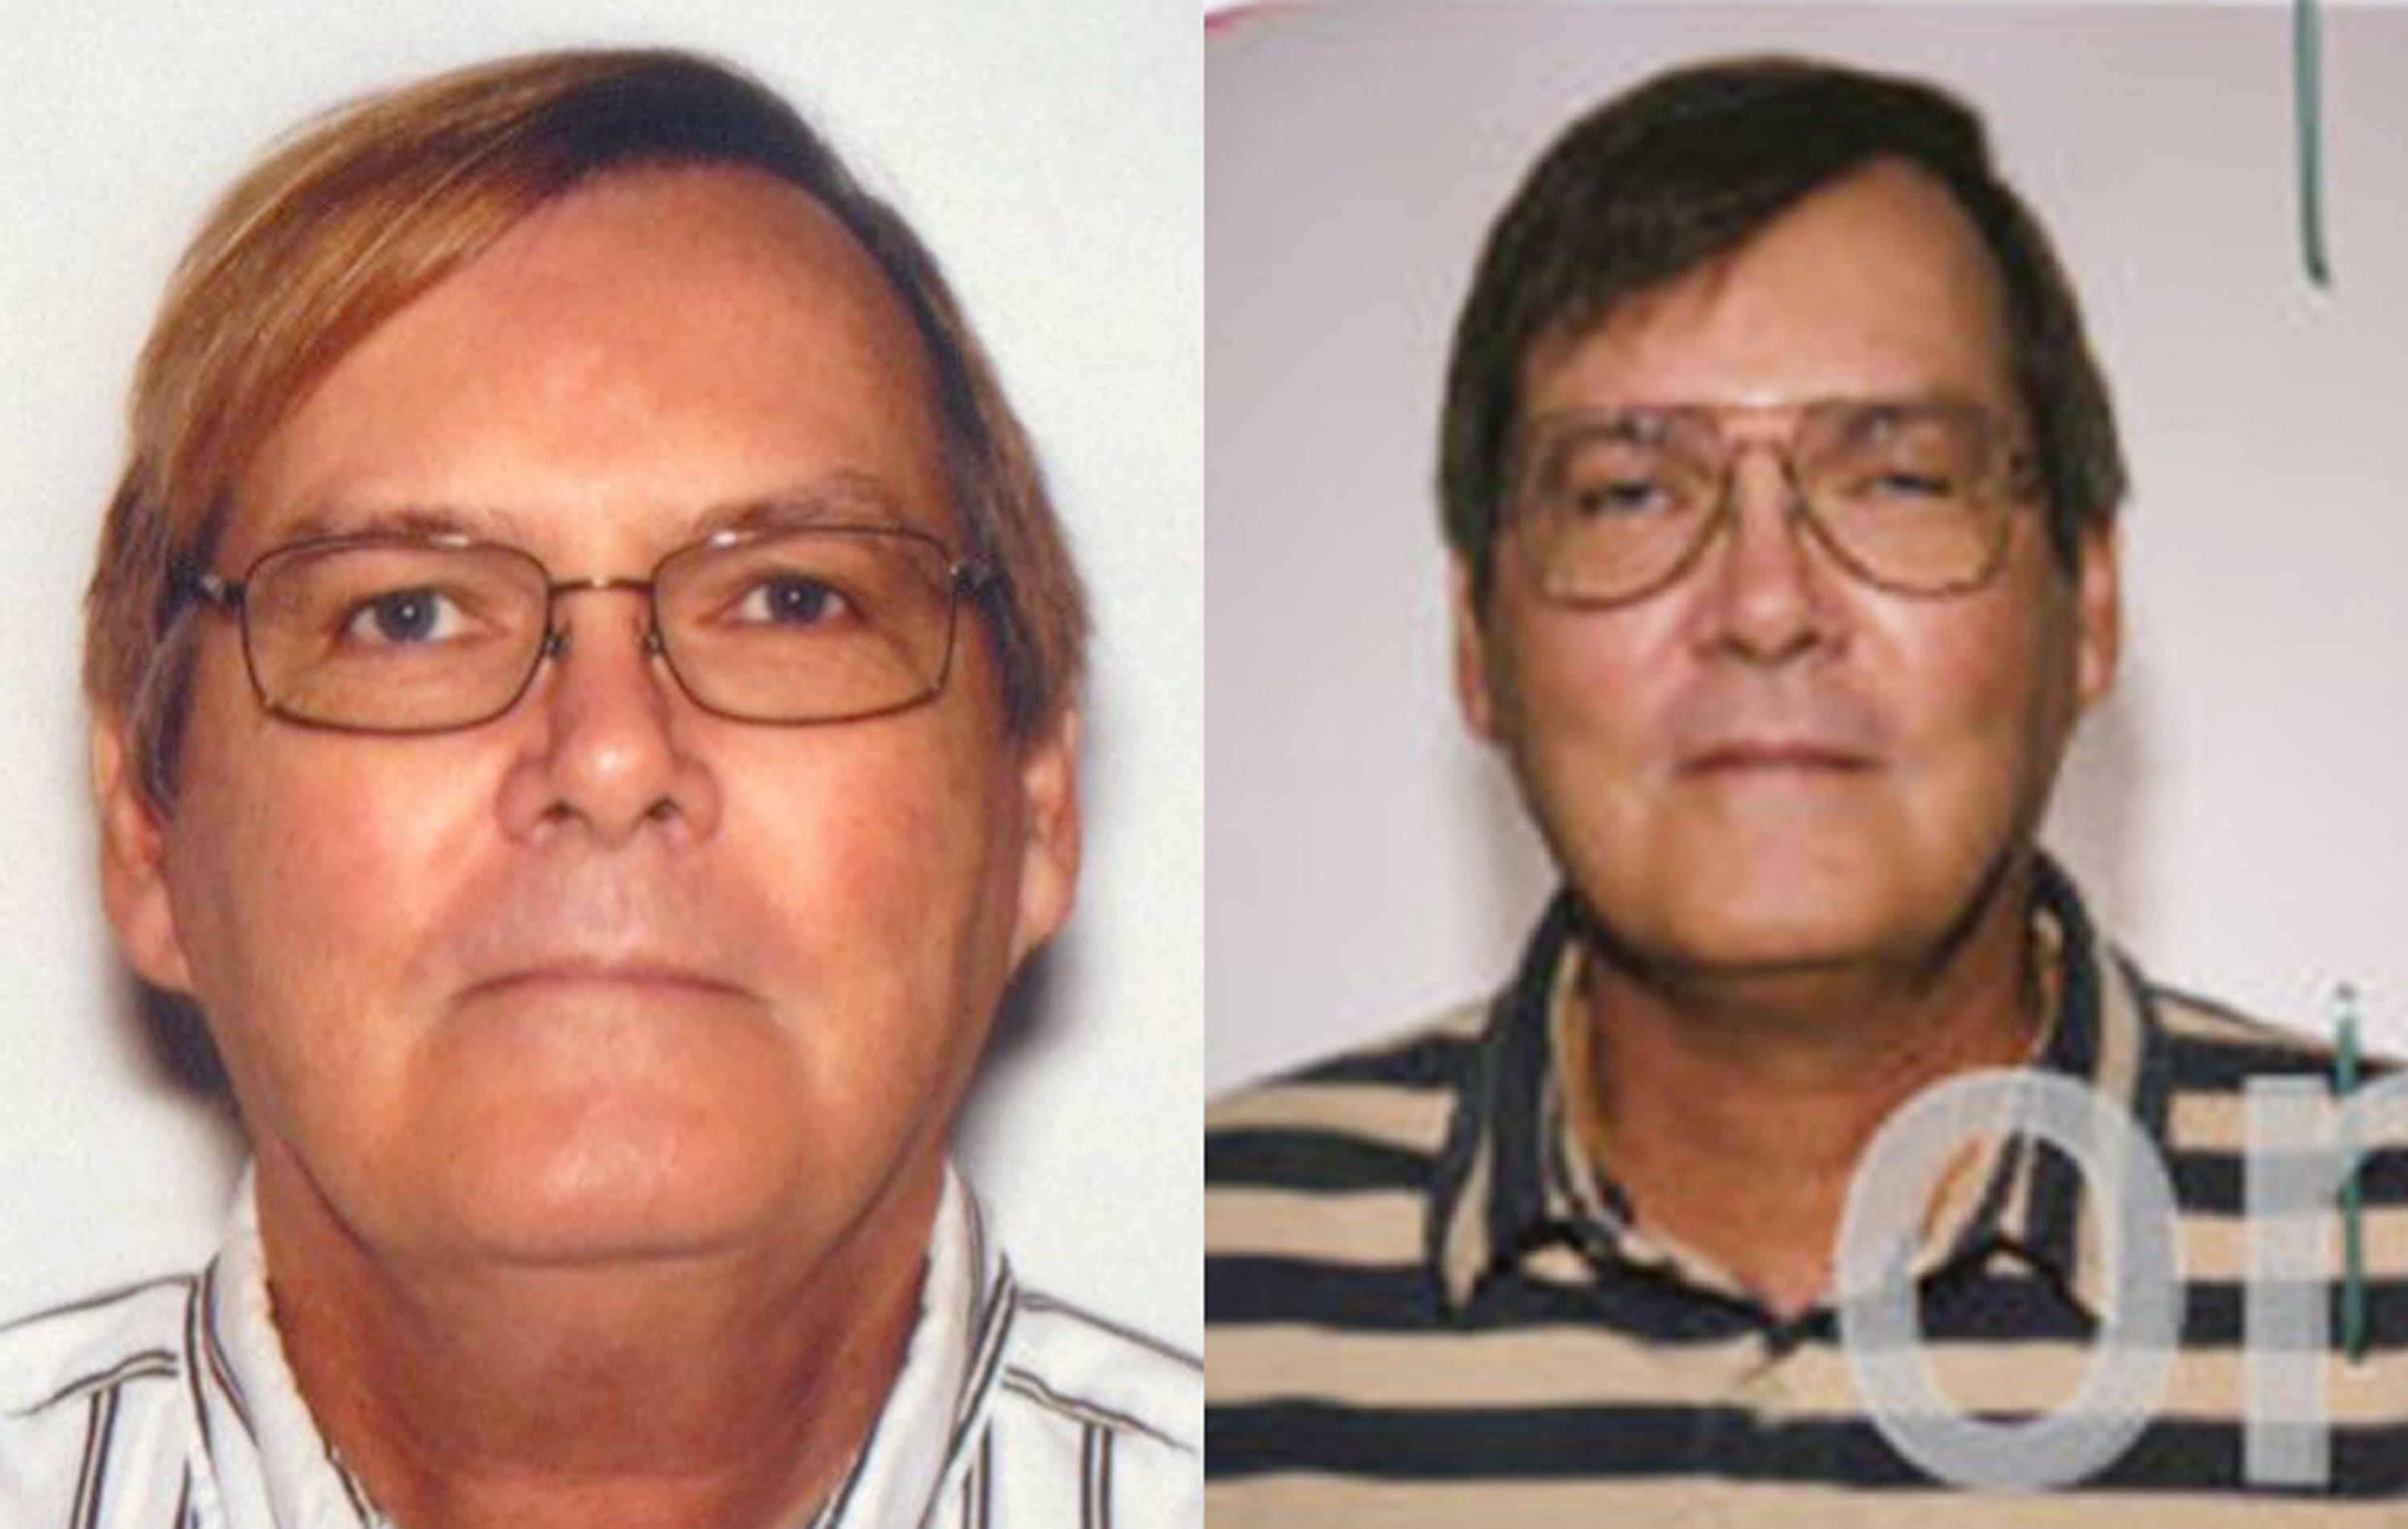 FBI
William James Vahey in 2013, left, and 2004.